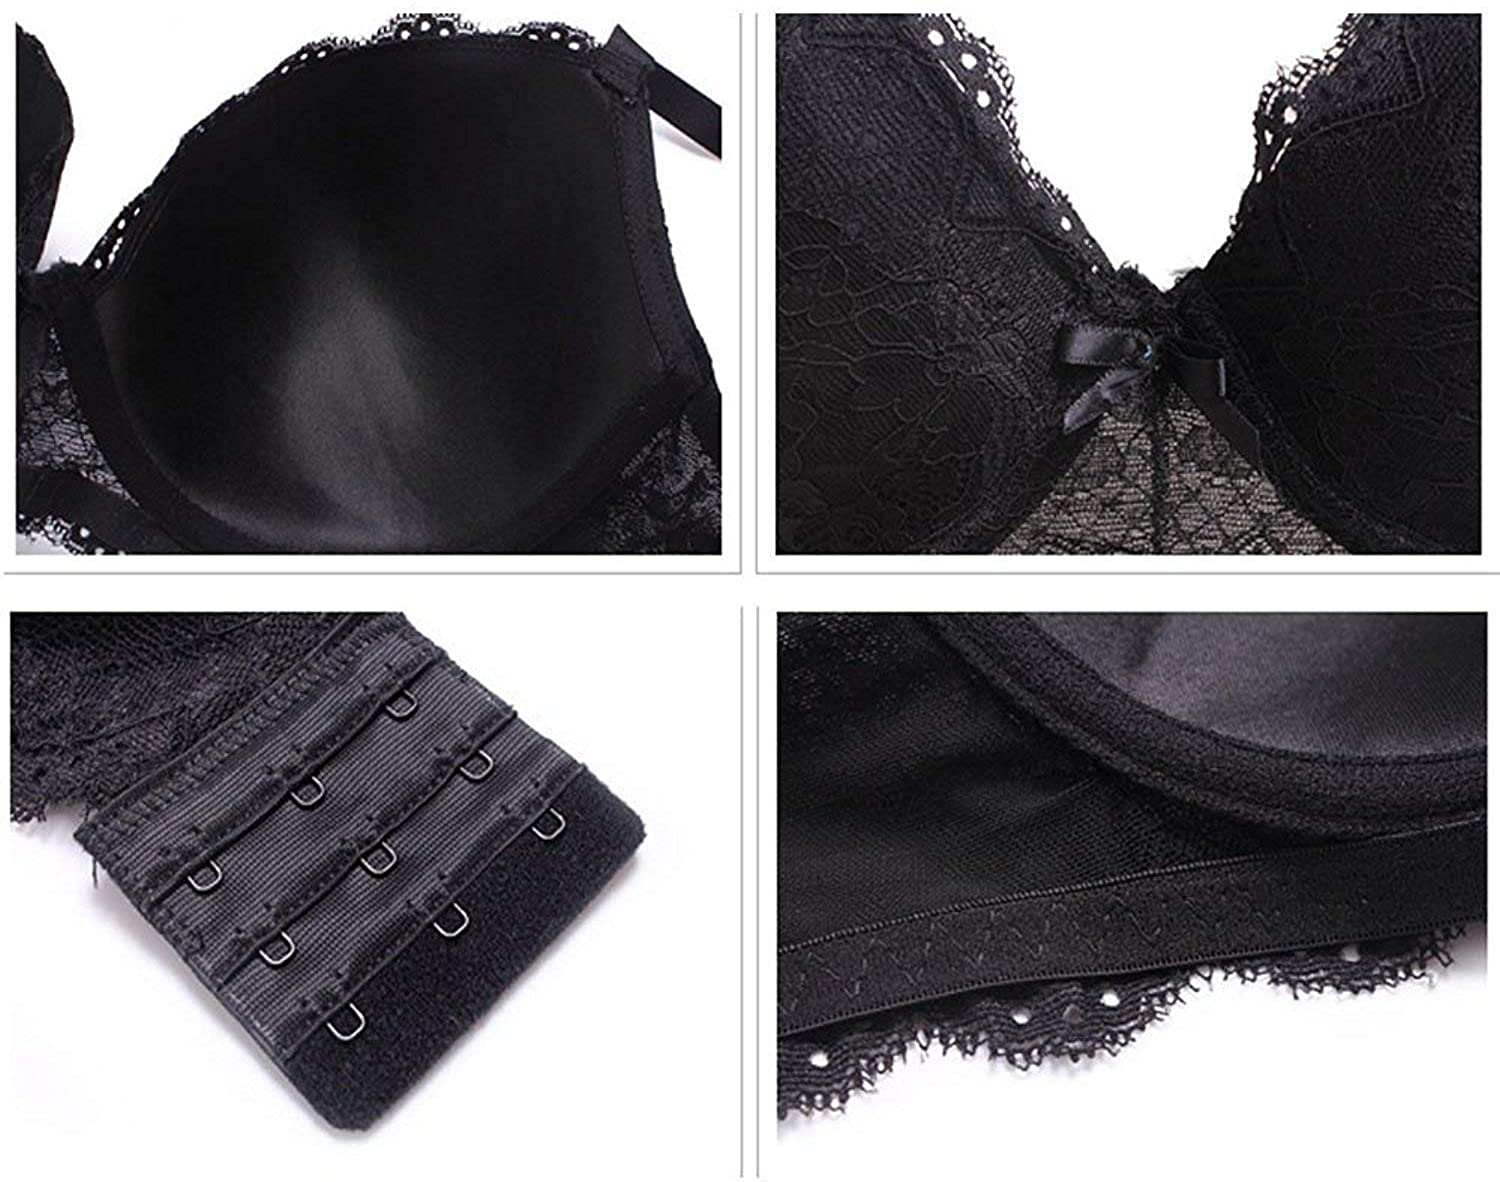 Black lace seduction fan pictures